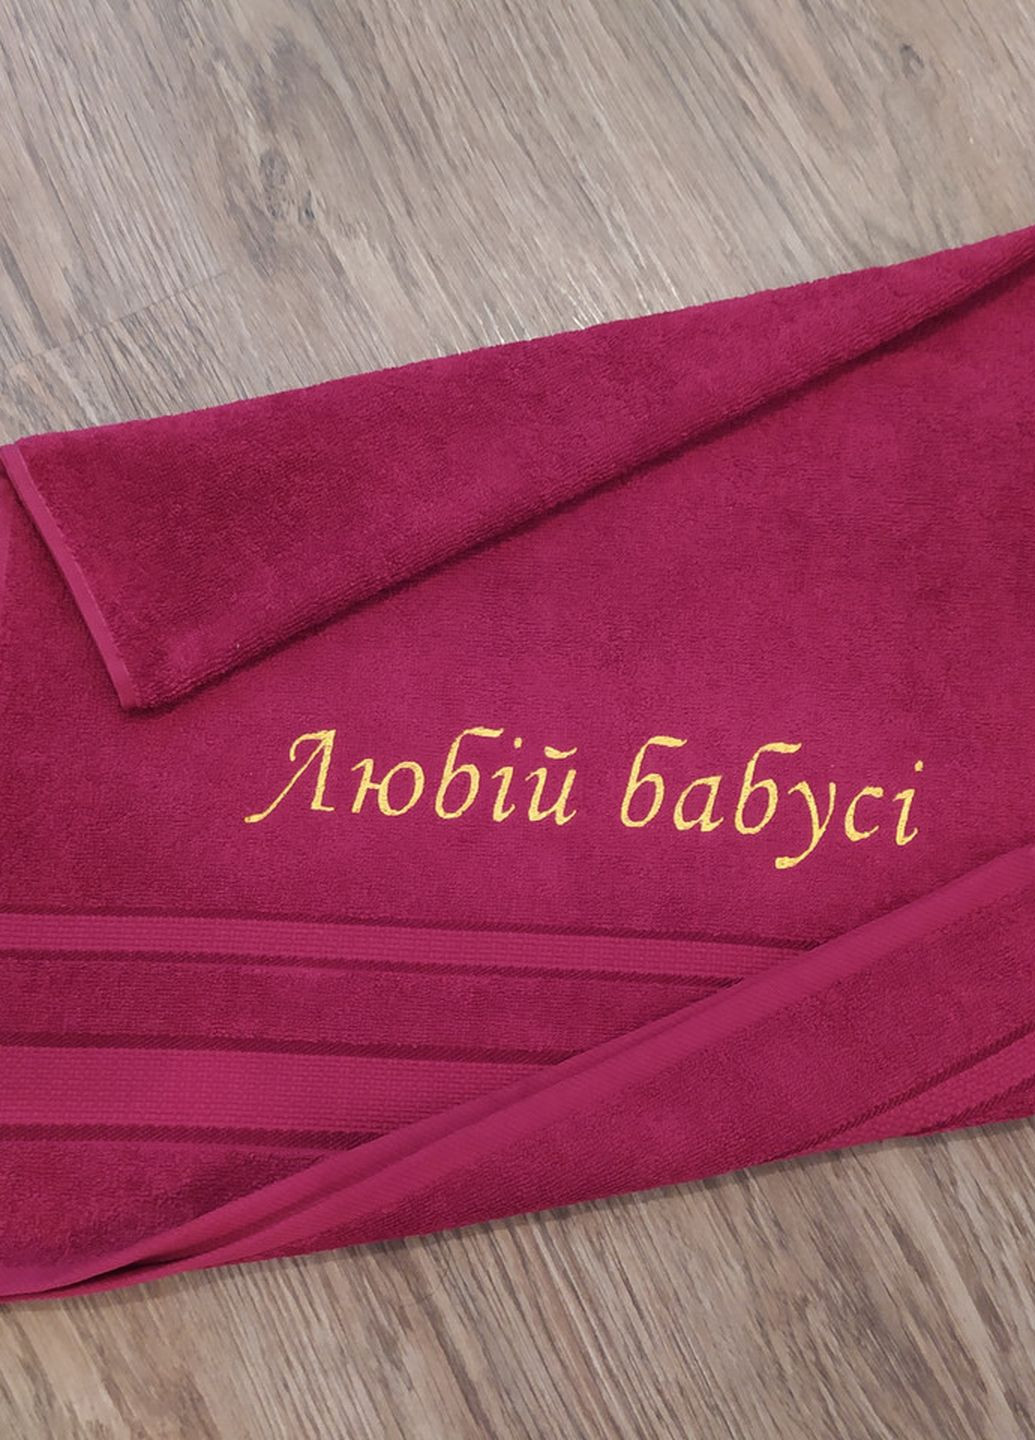 No Brand полотенце с вышивкой махровое лицевое 50*90 бордовый бабушке 00111 однотонный бордовый производство - Украина